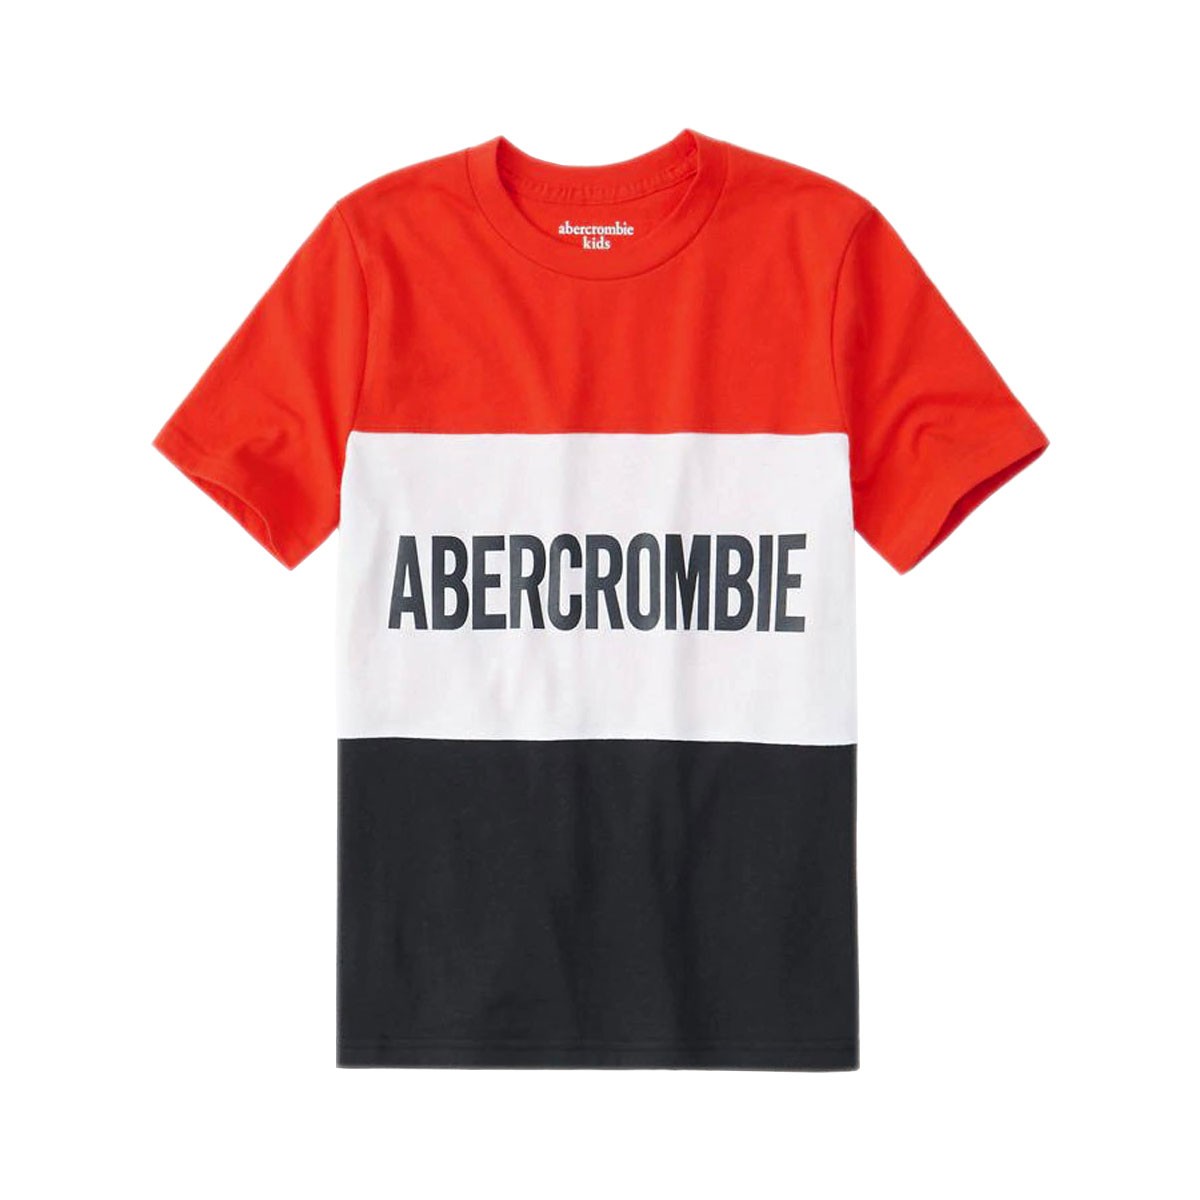 アバクロキッズ Tシャツ ボーイズ 子供服 正規品 AbercrombieKids 半袖